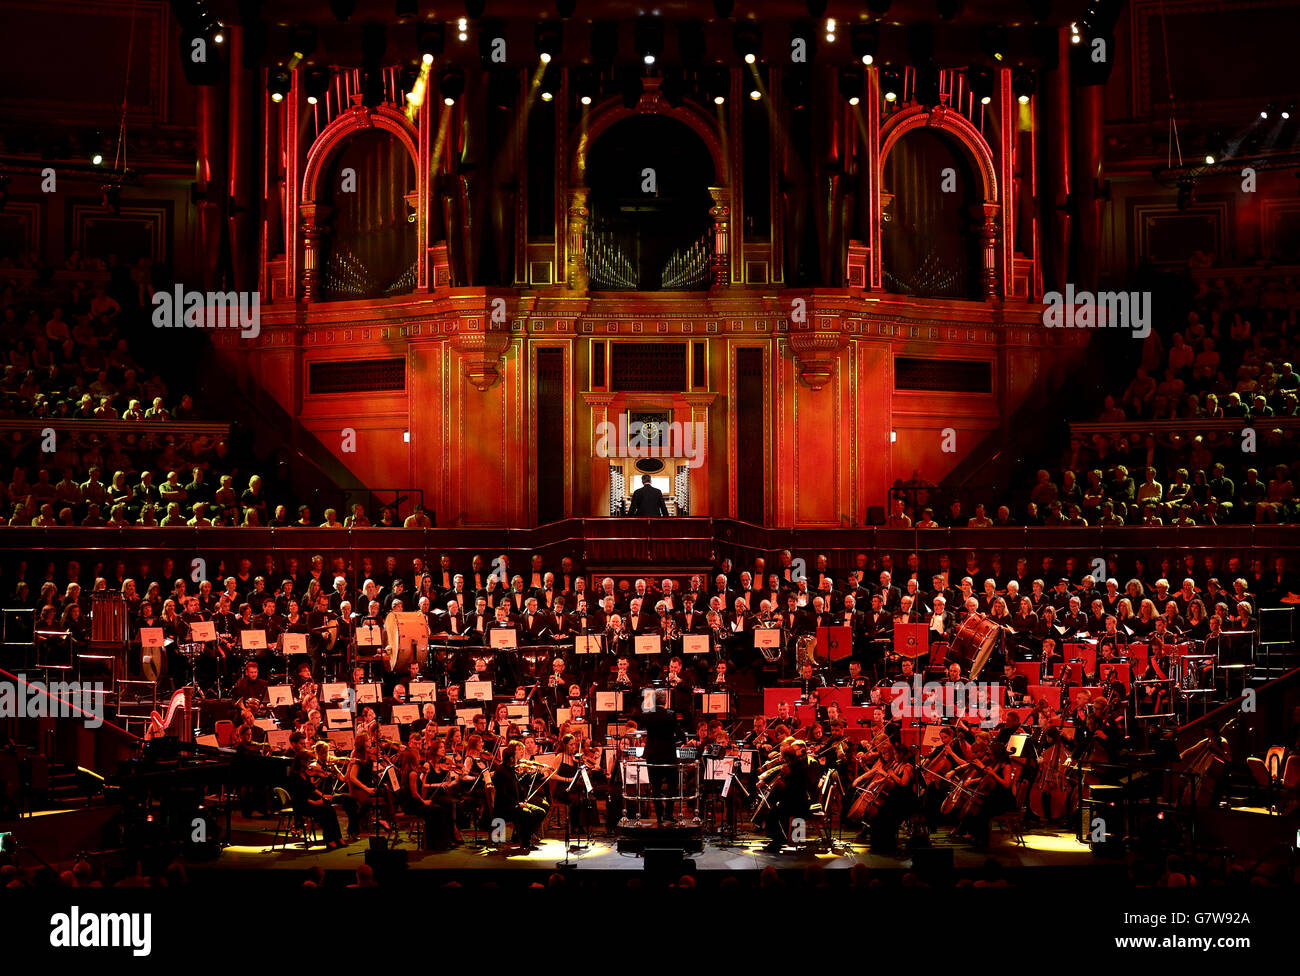 Kirill Karabits dirige l'Orchestre symphonique de Bournemouth et le Bournemouth Symphony Chorus sur scène au Royal Albert Hall de Londres pendant le Classic FM Live, mis en scène par la première station de musique classique du Royaume-Uni. Banque D'Images